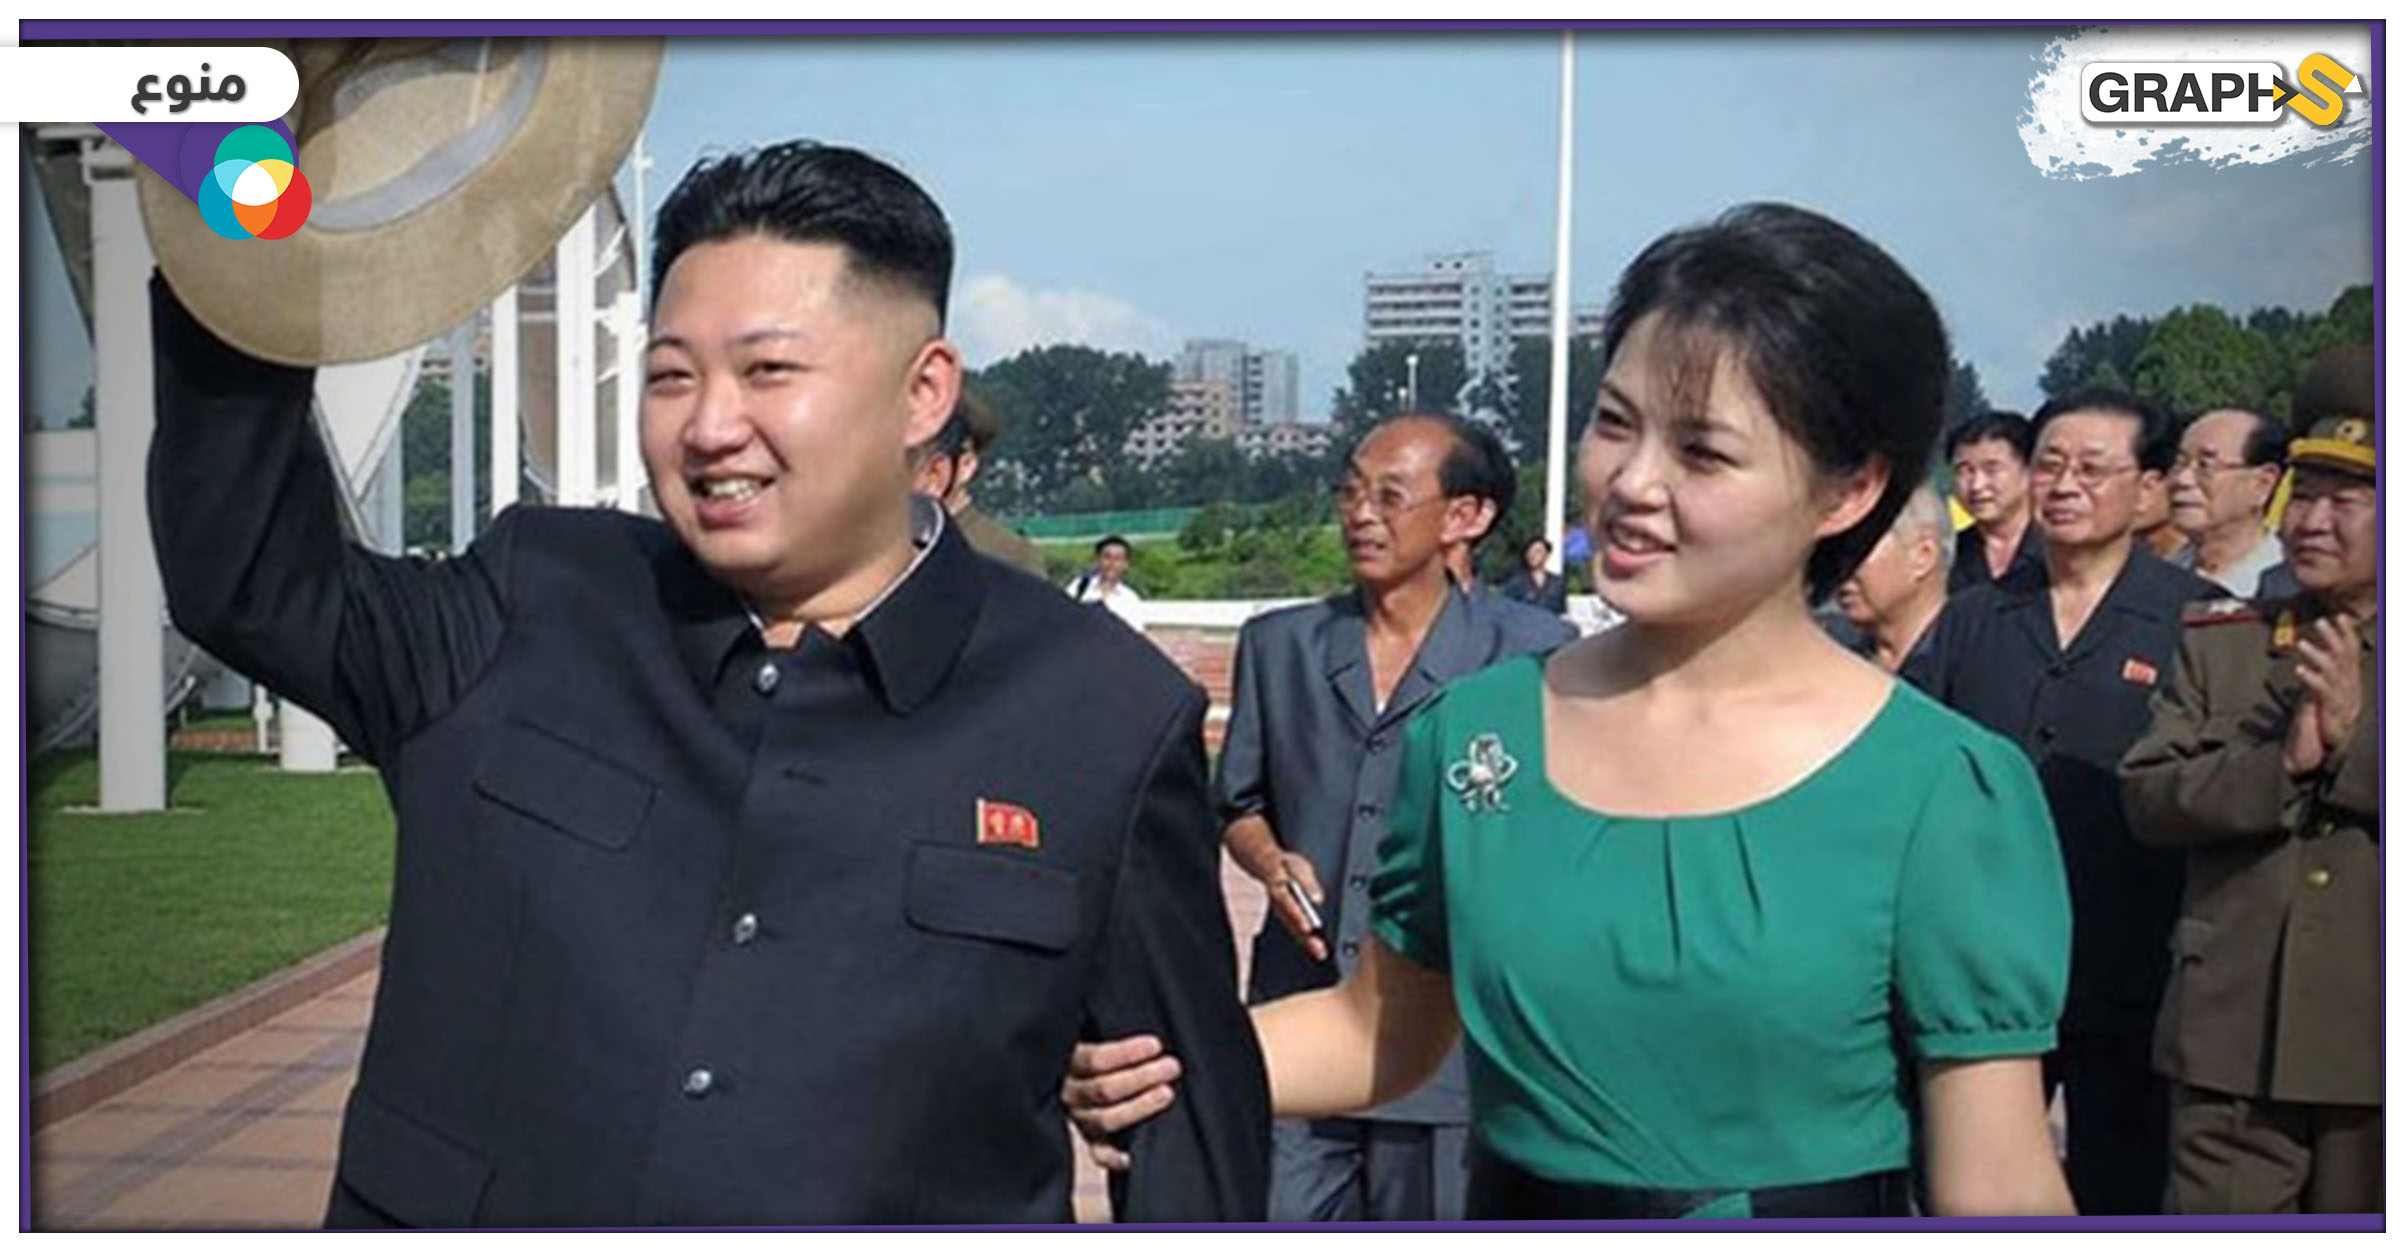 زوجة زعيم كوريا الشمالية